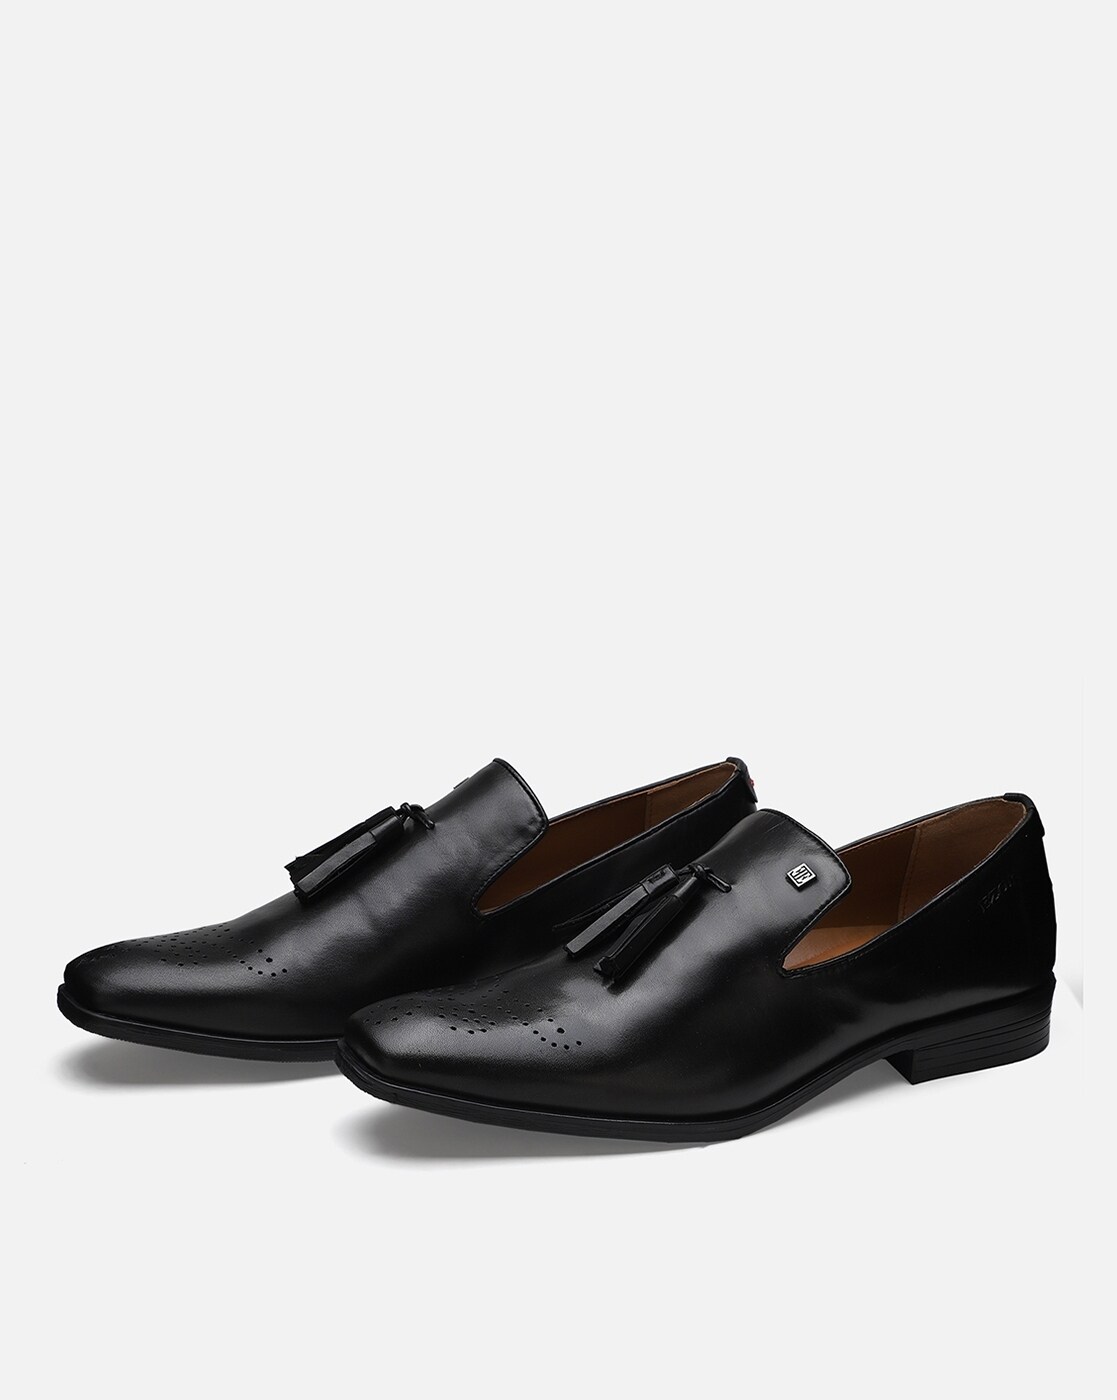 Buy Black Formal Shoes for Men by EZOK Online 